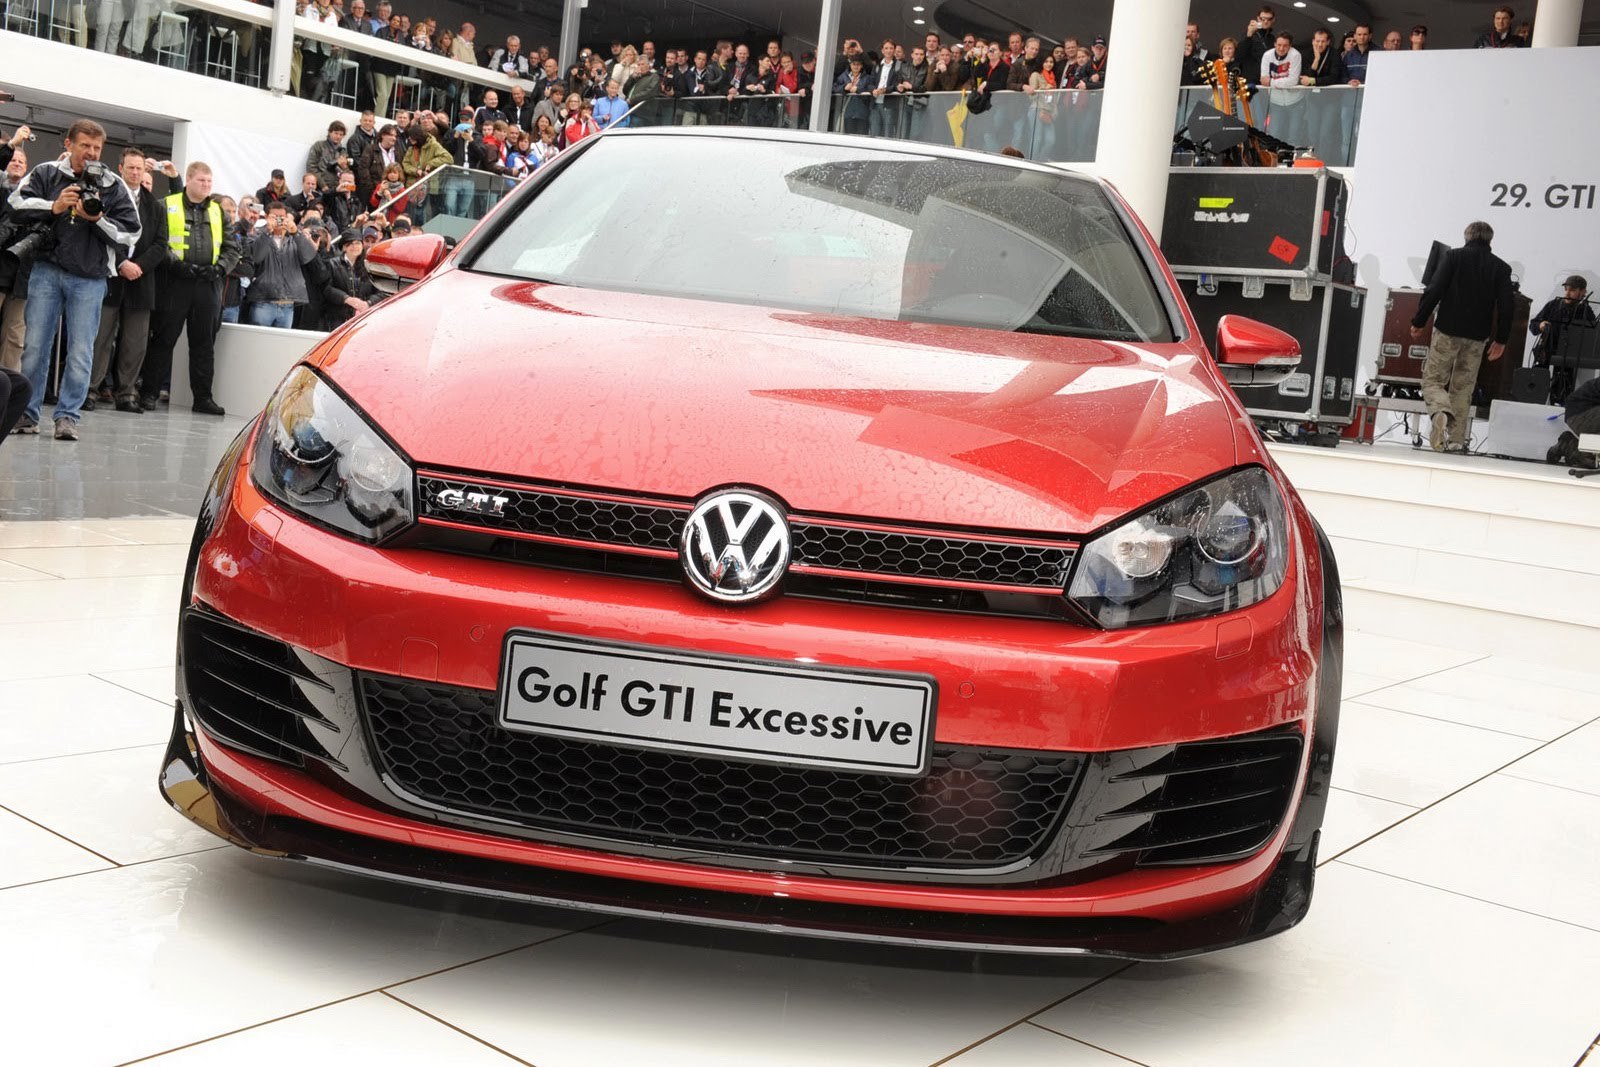 Volkswagen Golf GTI Excessive prefigureaza un pachet sport dedicat lui Golf GTI